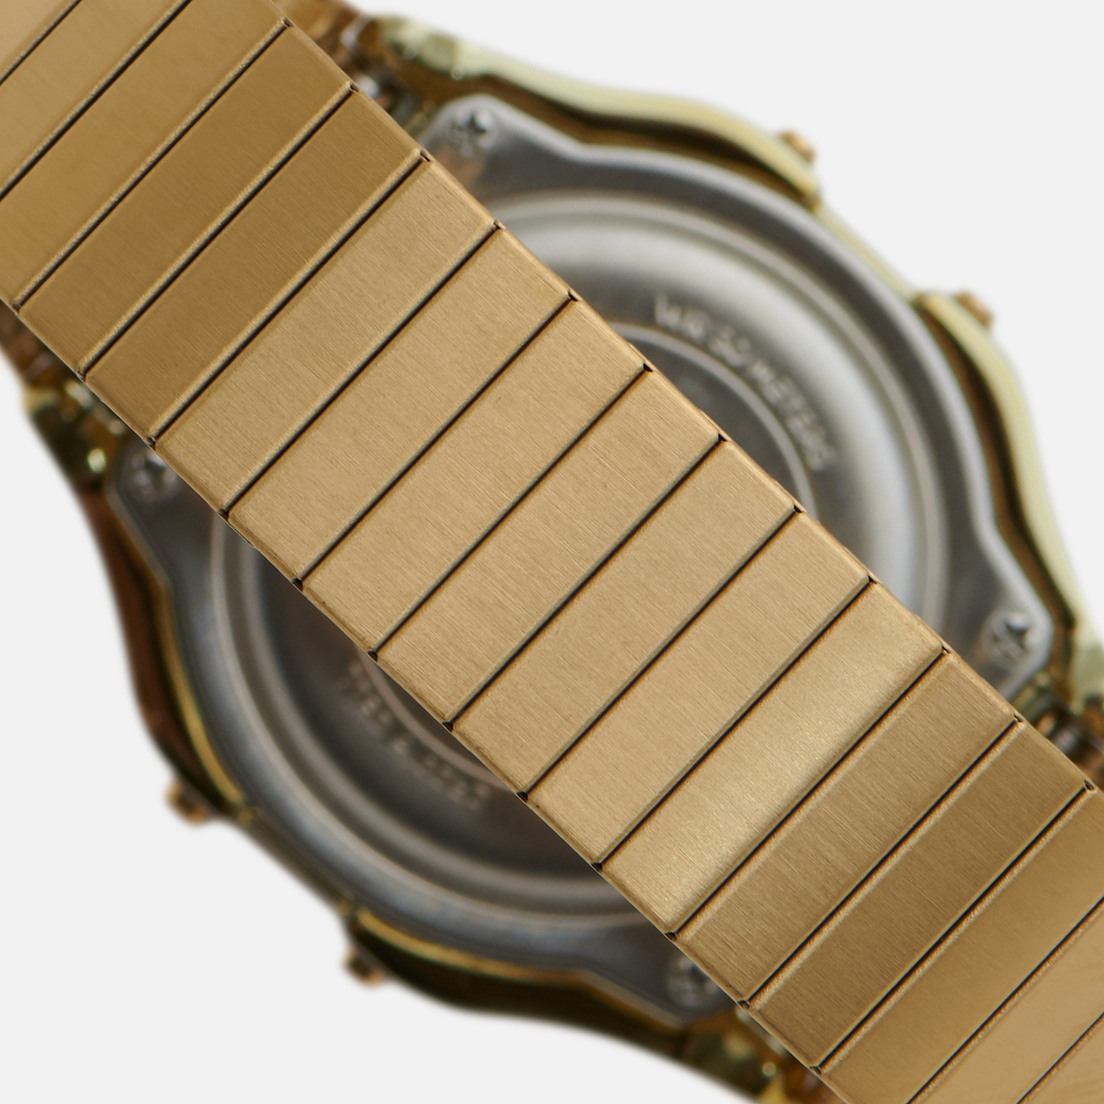 Timex Наручные часы T80 Expansion